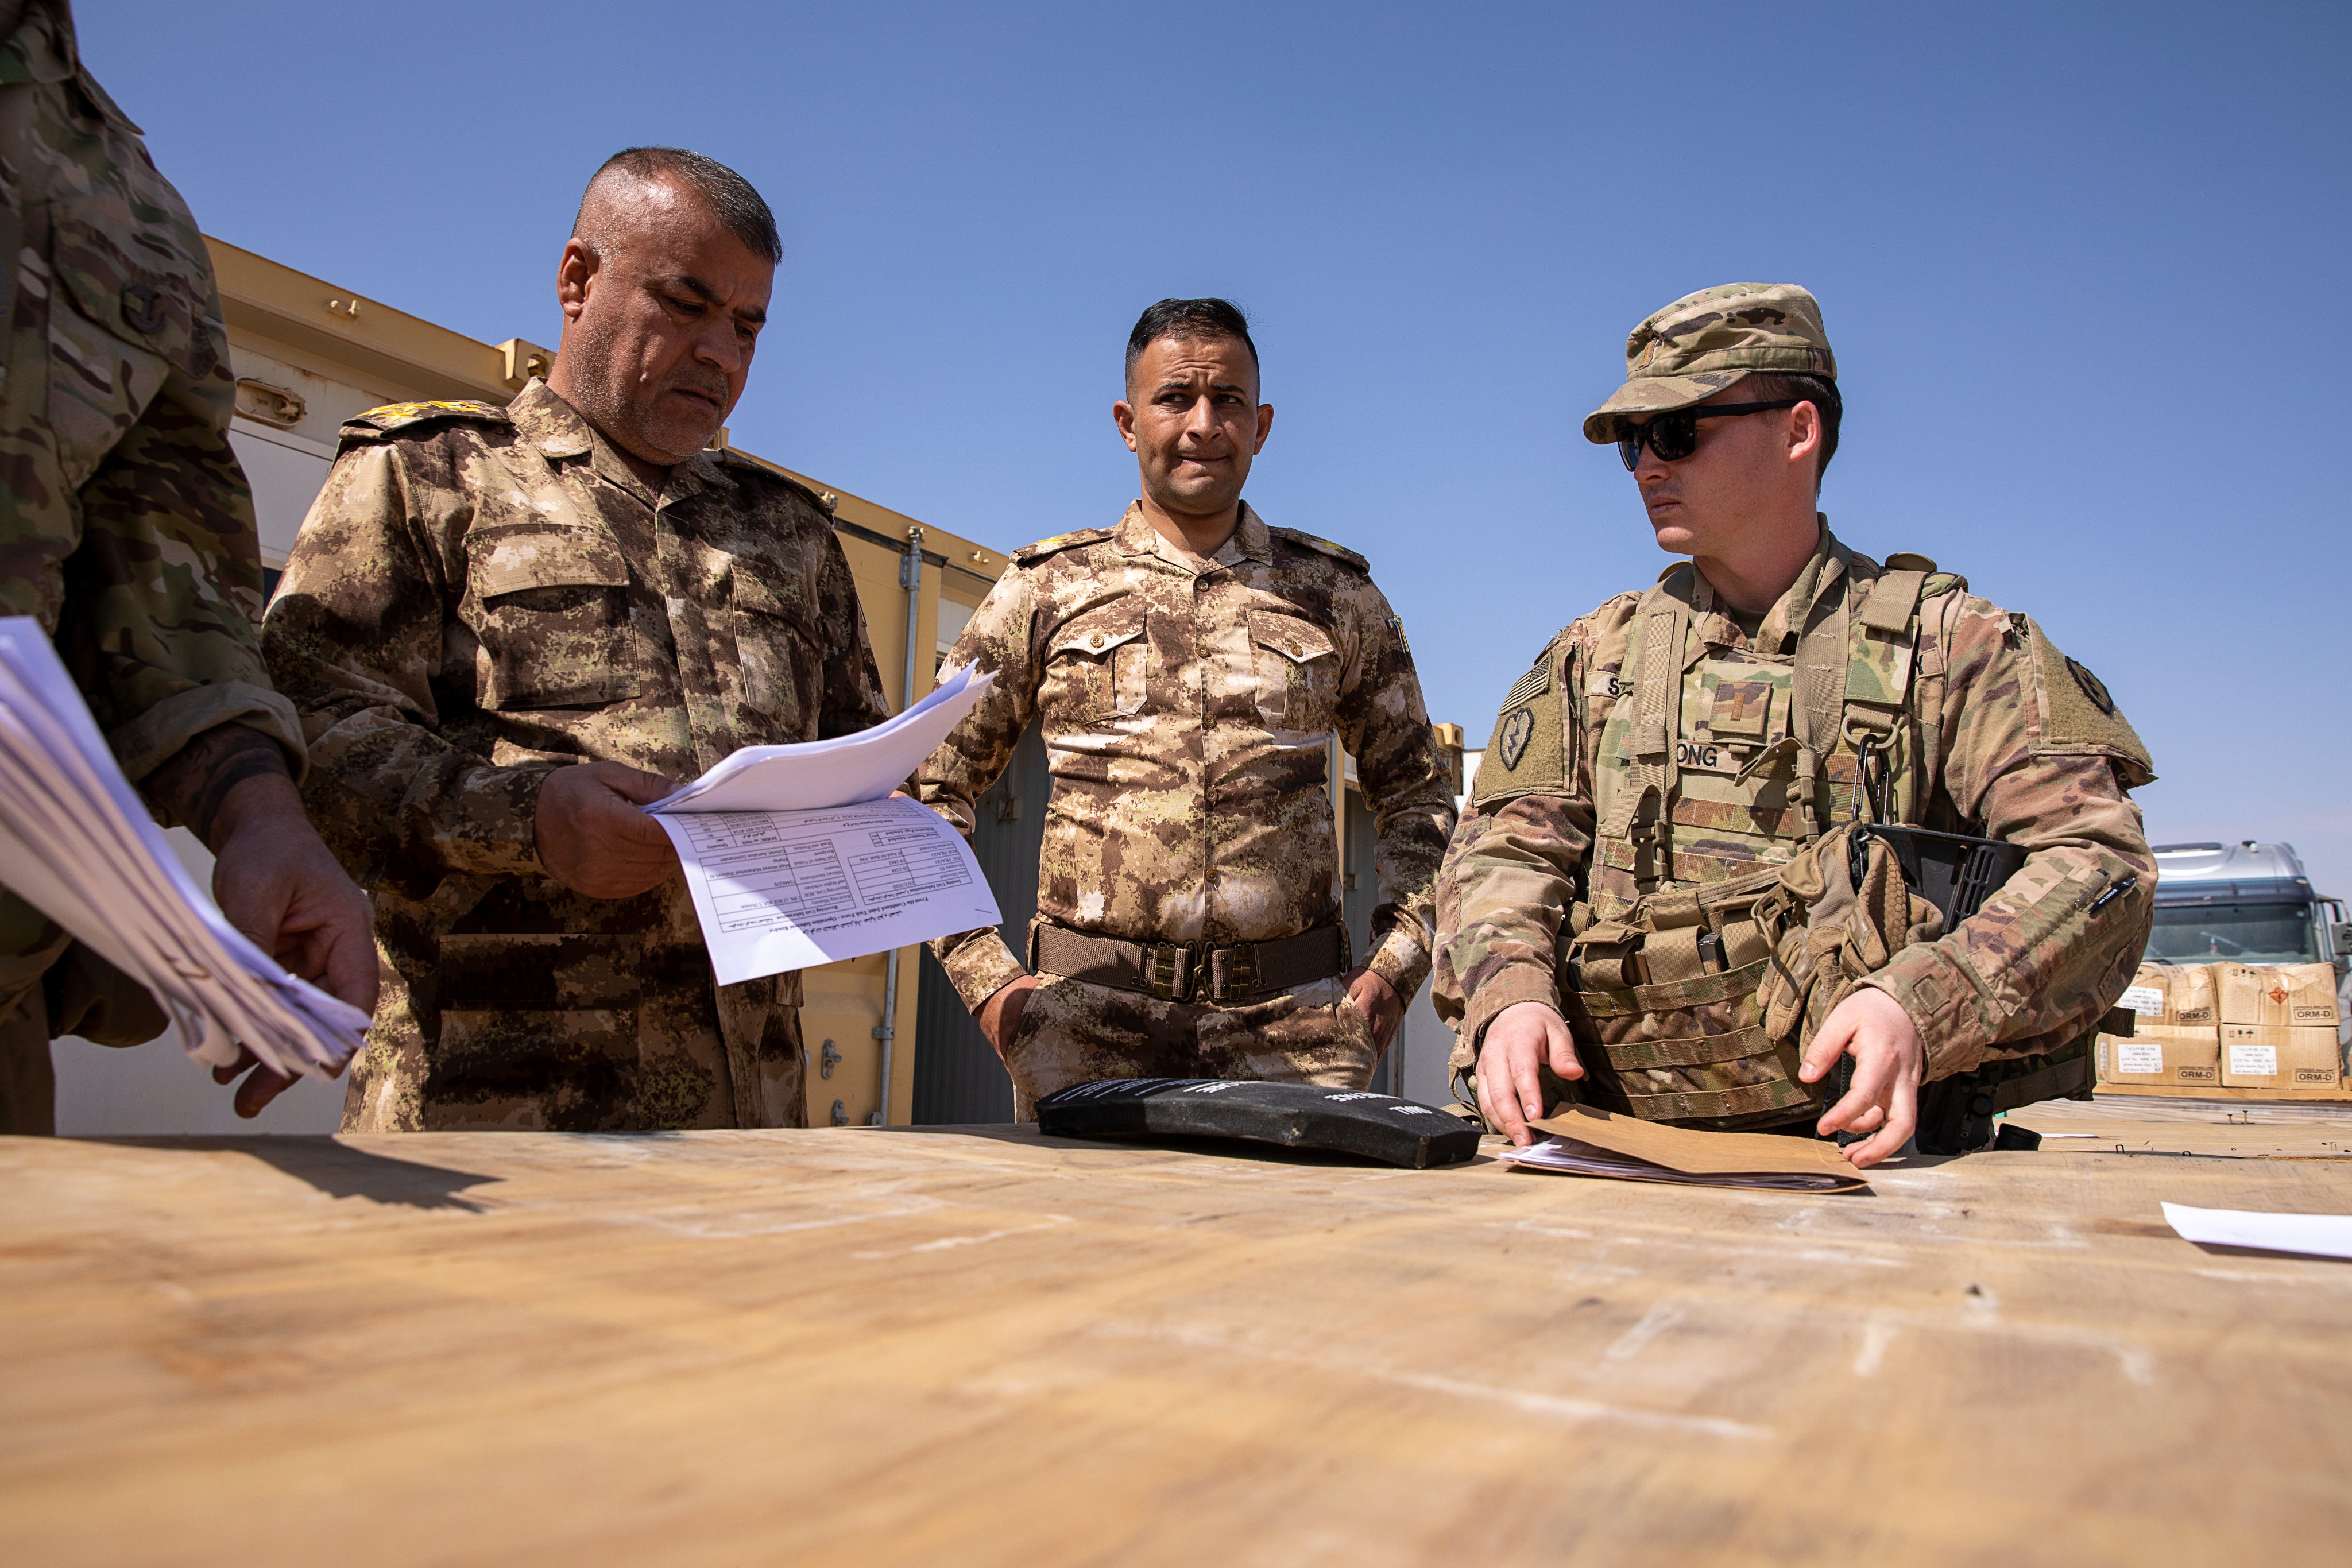 التحالف الدولي يمنح الفرقة السابعة في الجيش العراقي اسلحه وتجهيزات بقيمة 10 ملايين دولار مجانا GJvRimsWoAAUaN5?format=jpg&name=4096x4096